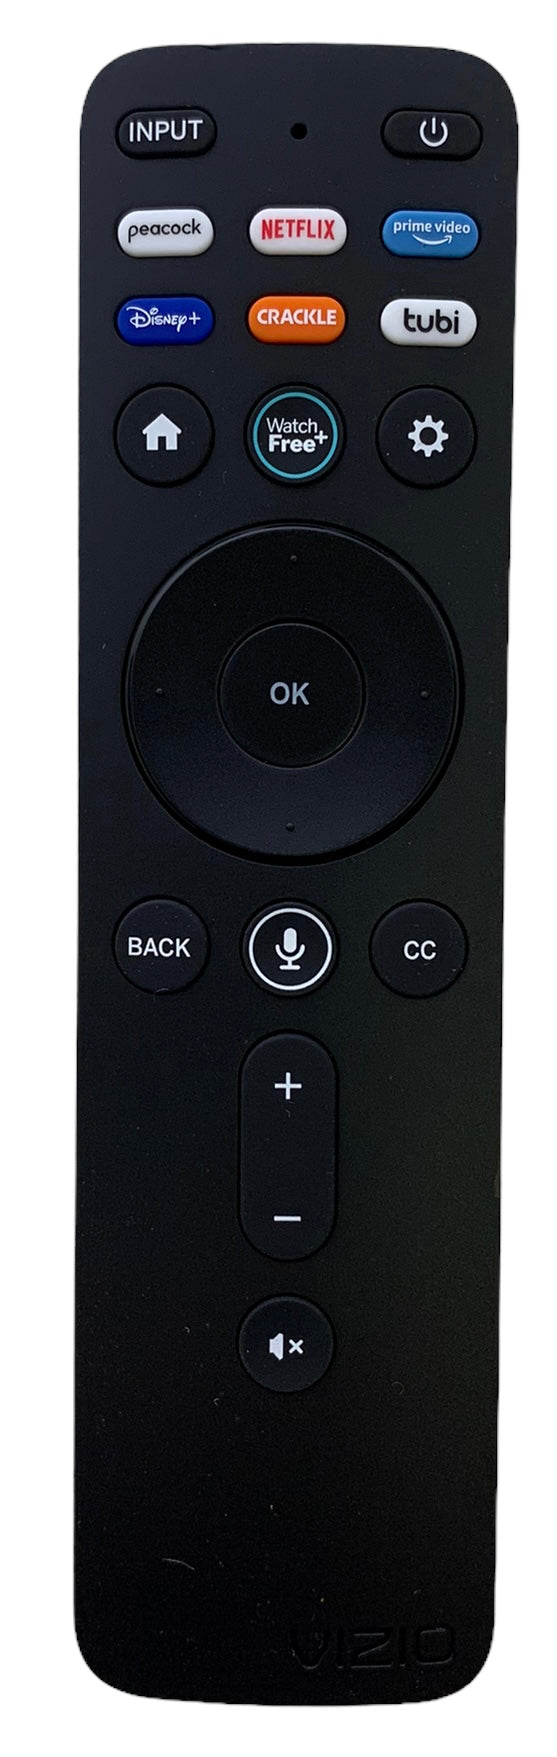 Vizio 398GM15BEVZY0002KI (XRT260) Bluetooth Voice Remote Control -- NEW